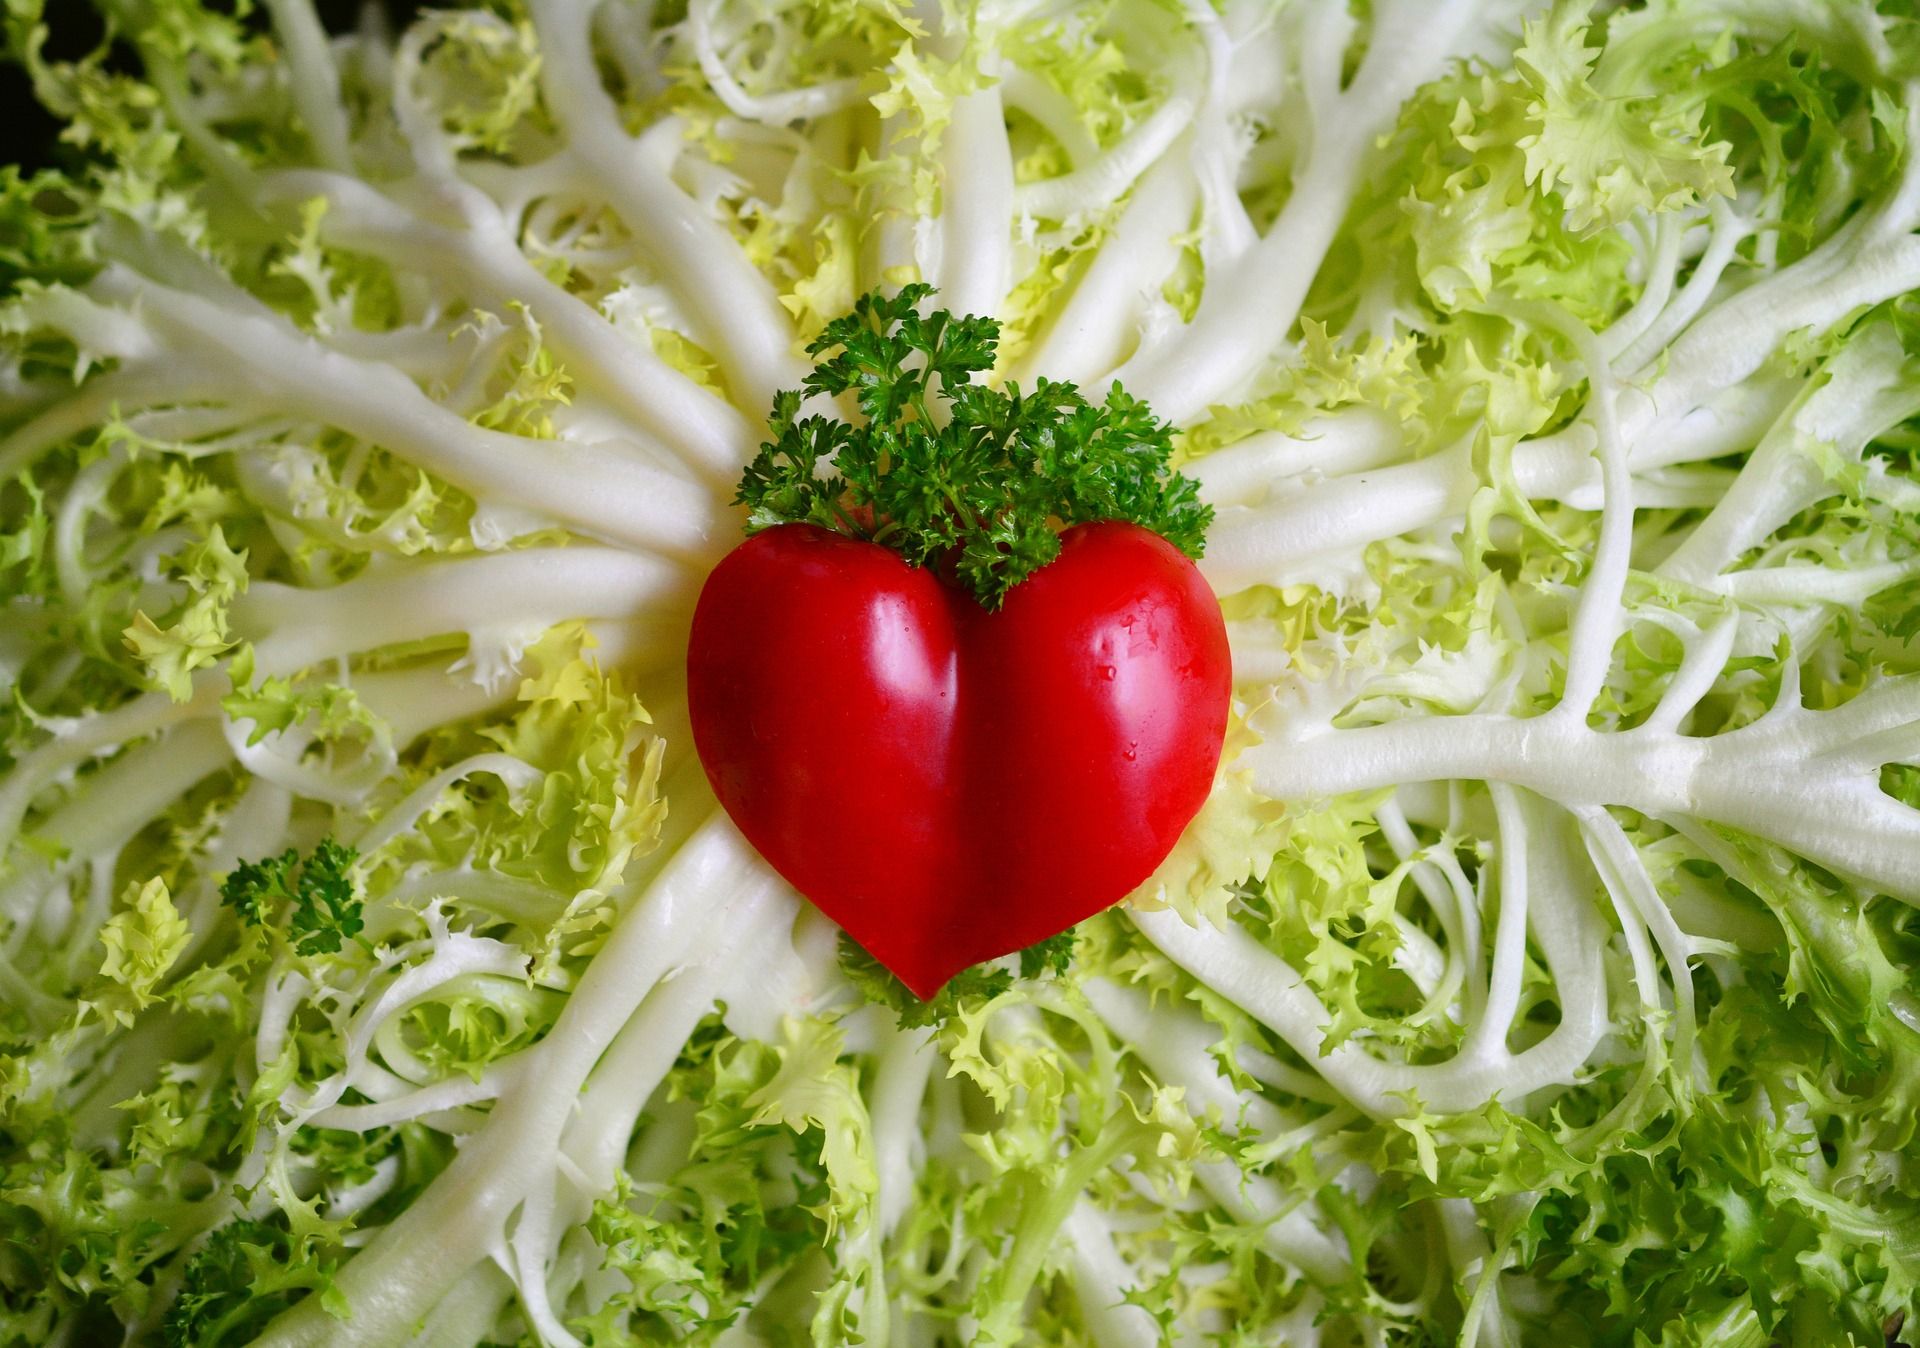 zdjęcie kompozycji artystycznej złożonej z sałaty i czerwonej papryczki w kształcie serca